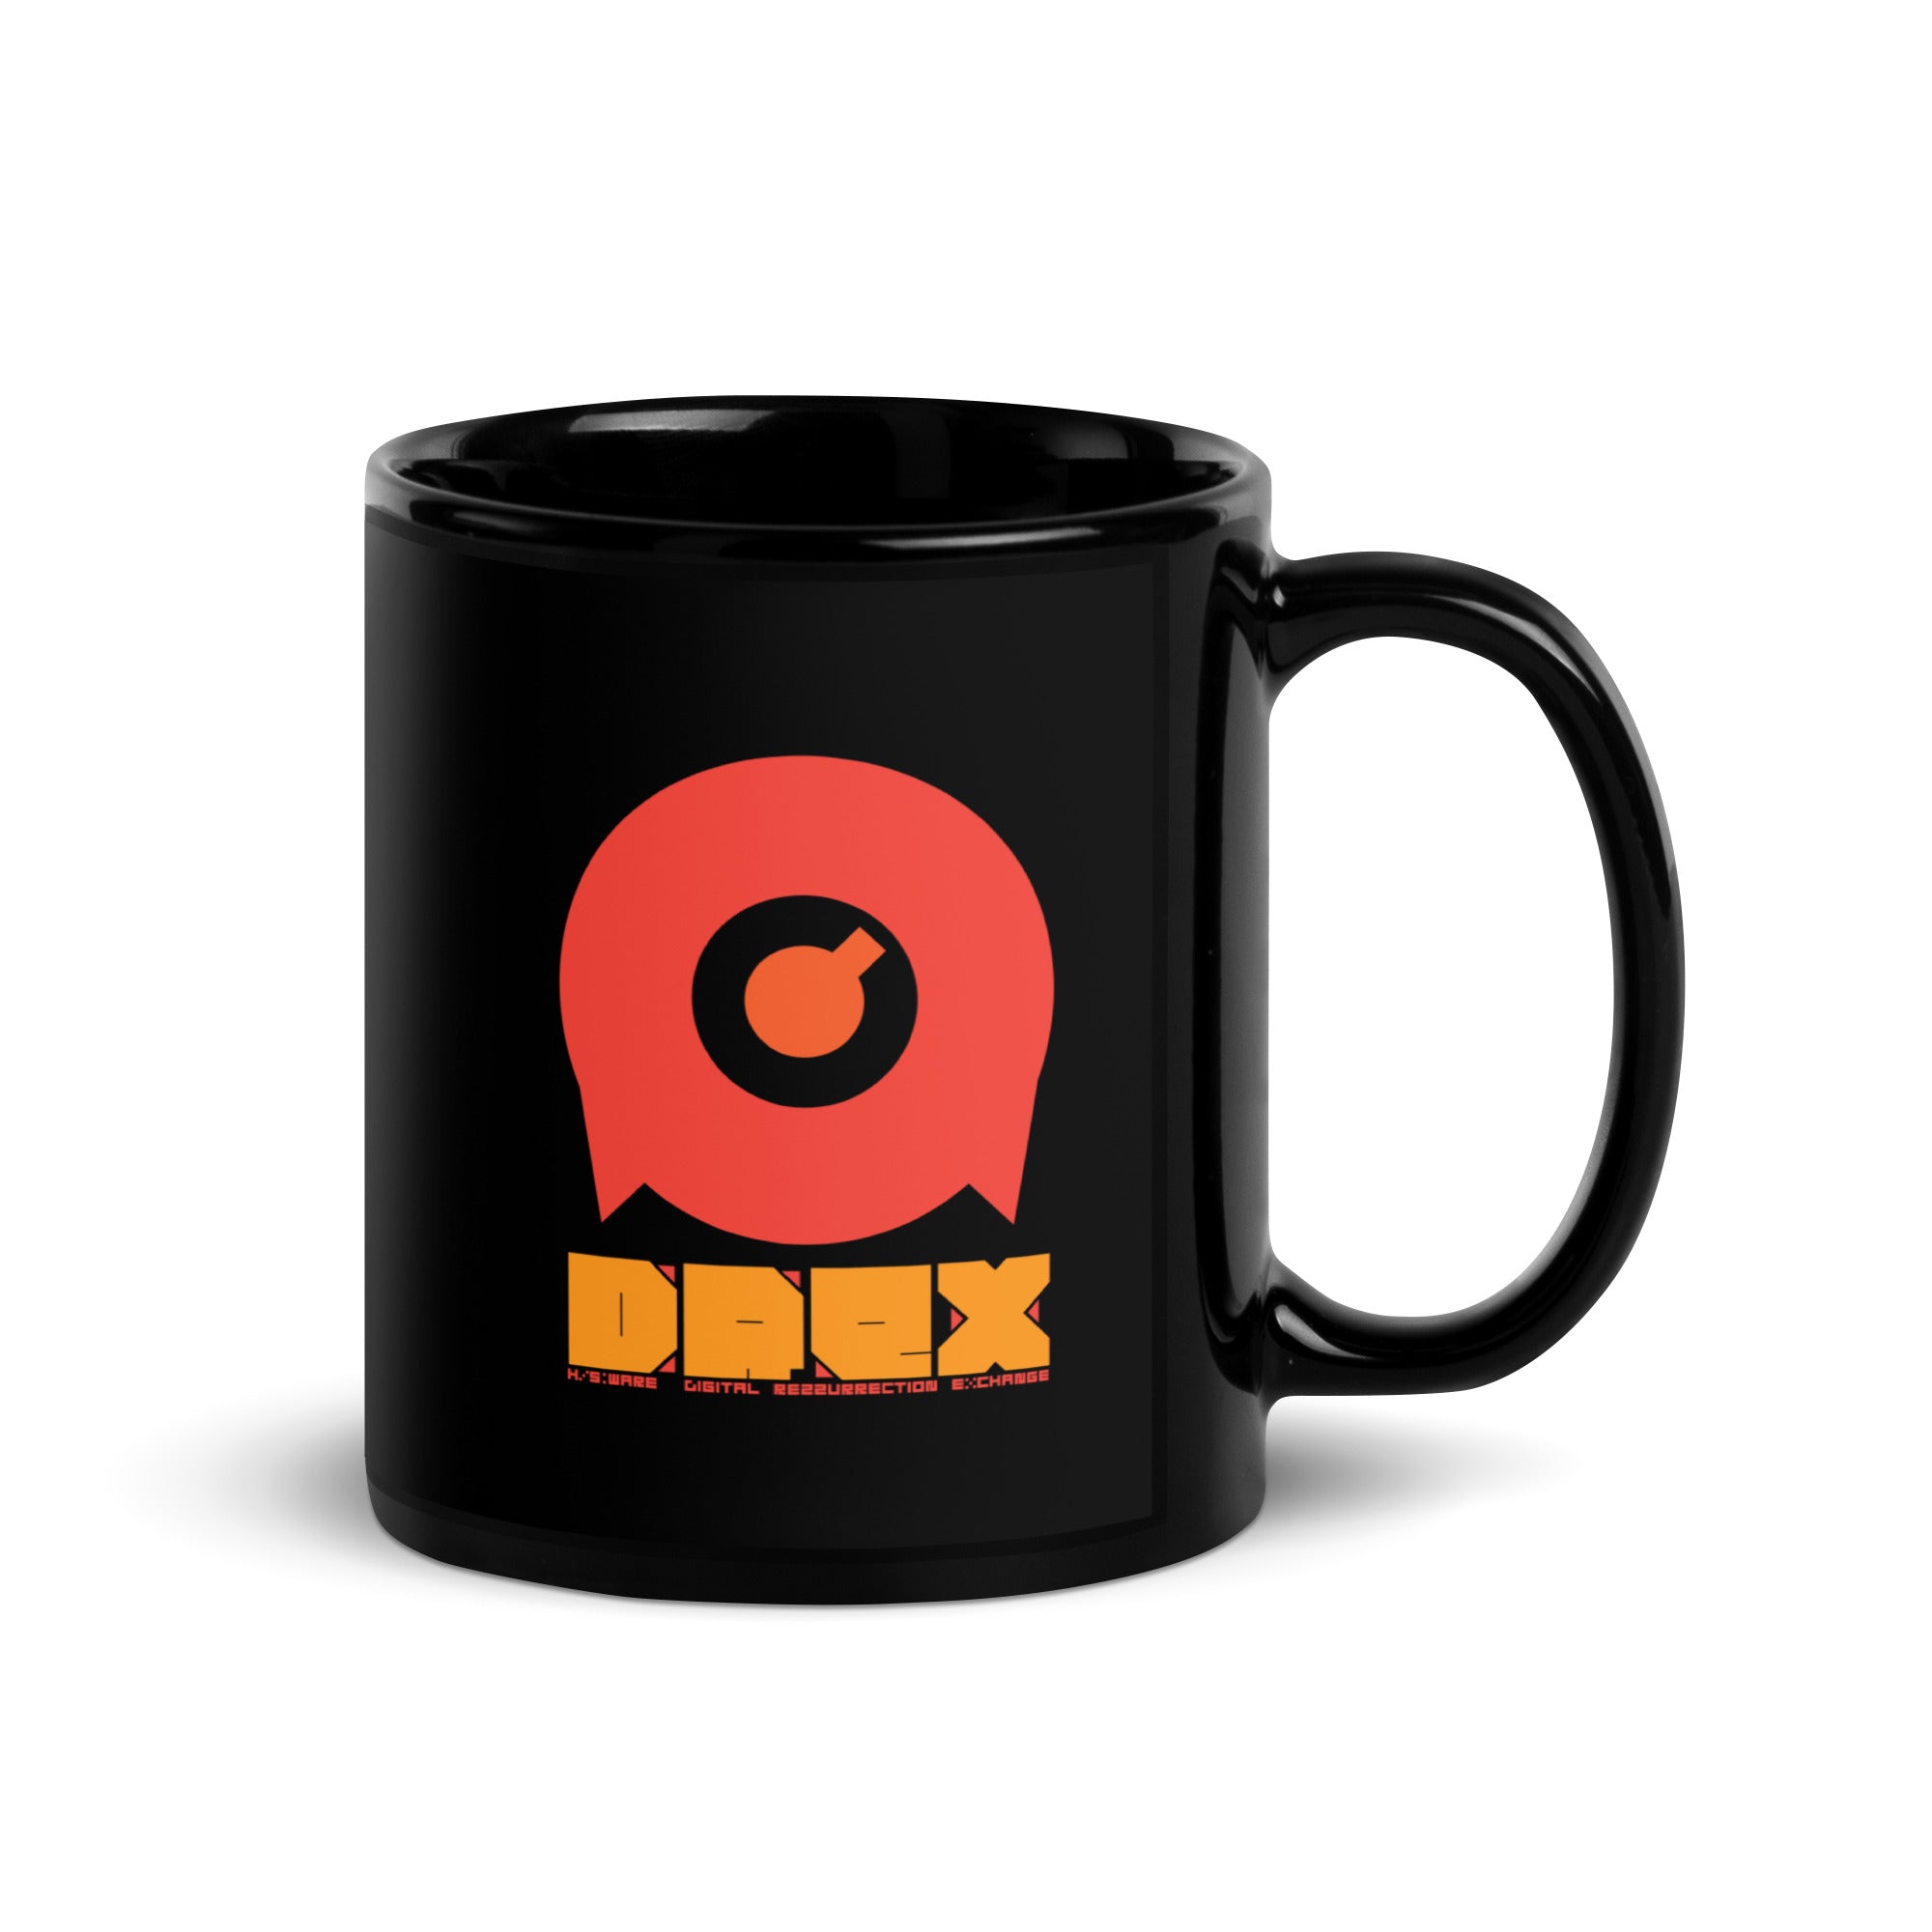 DREX Mug